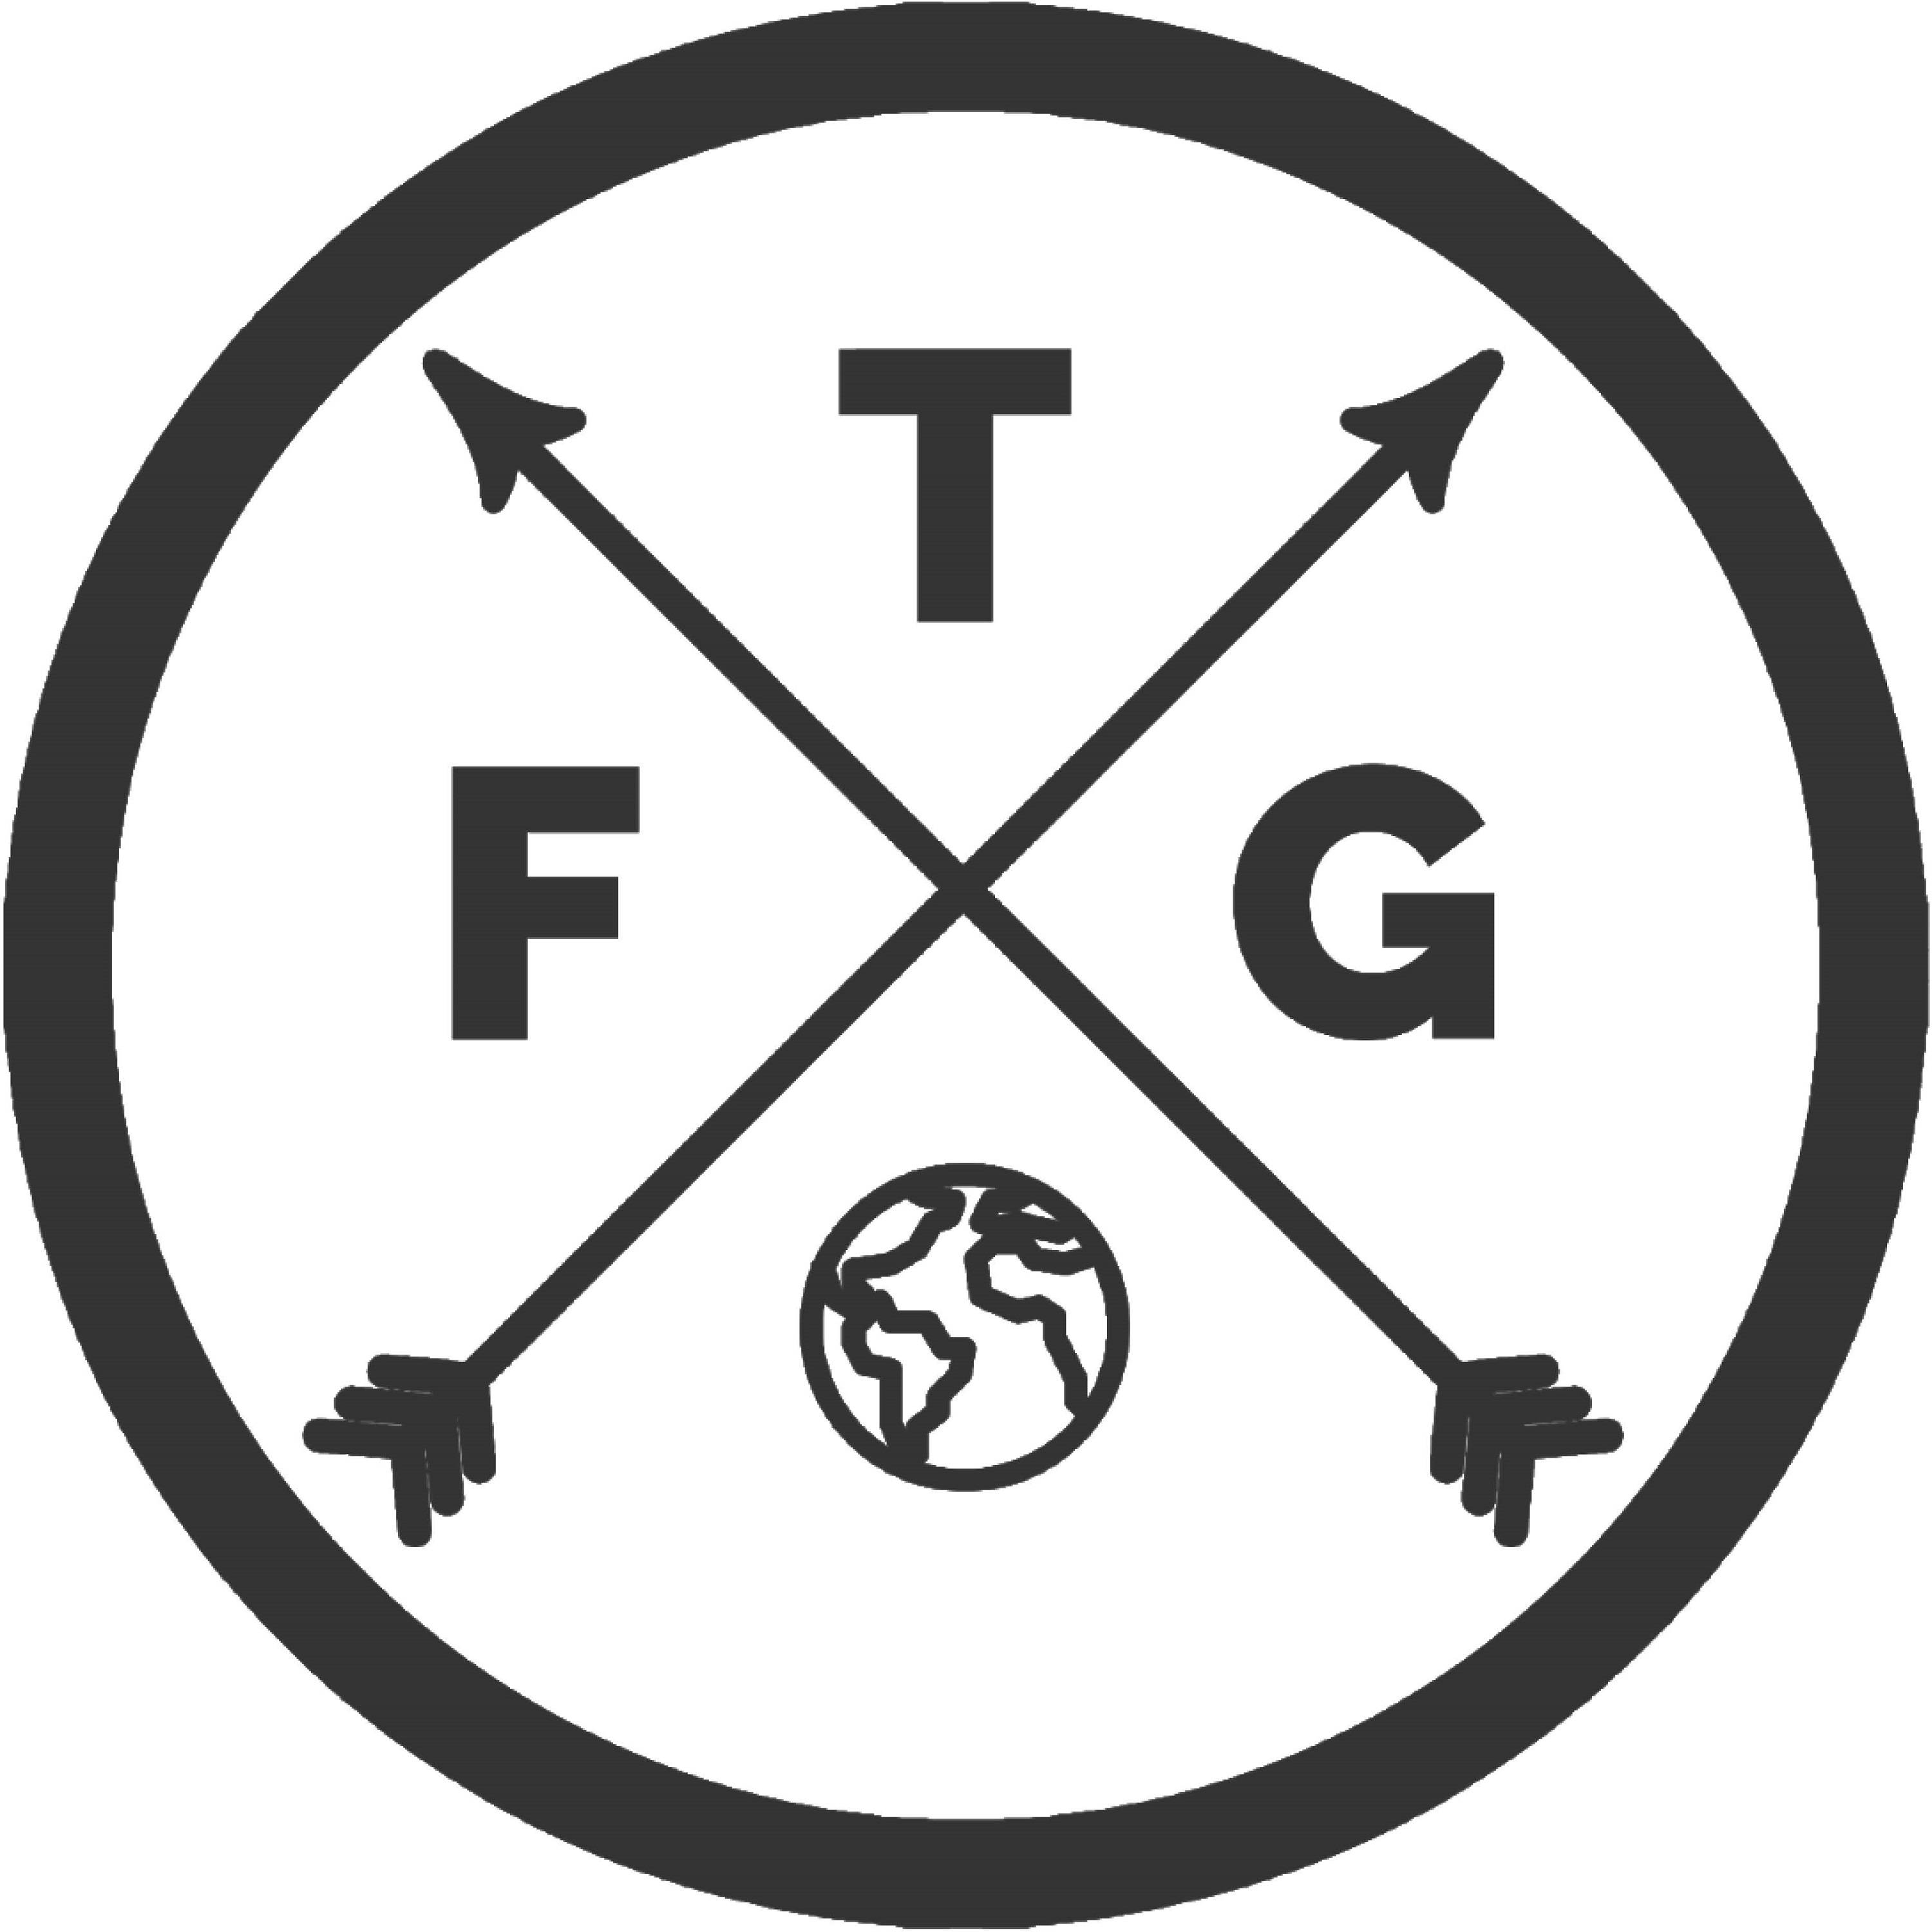 FTG Podcast logo